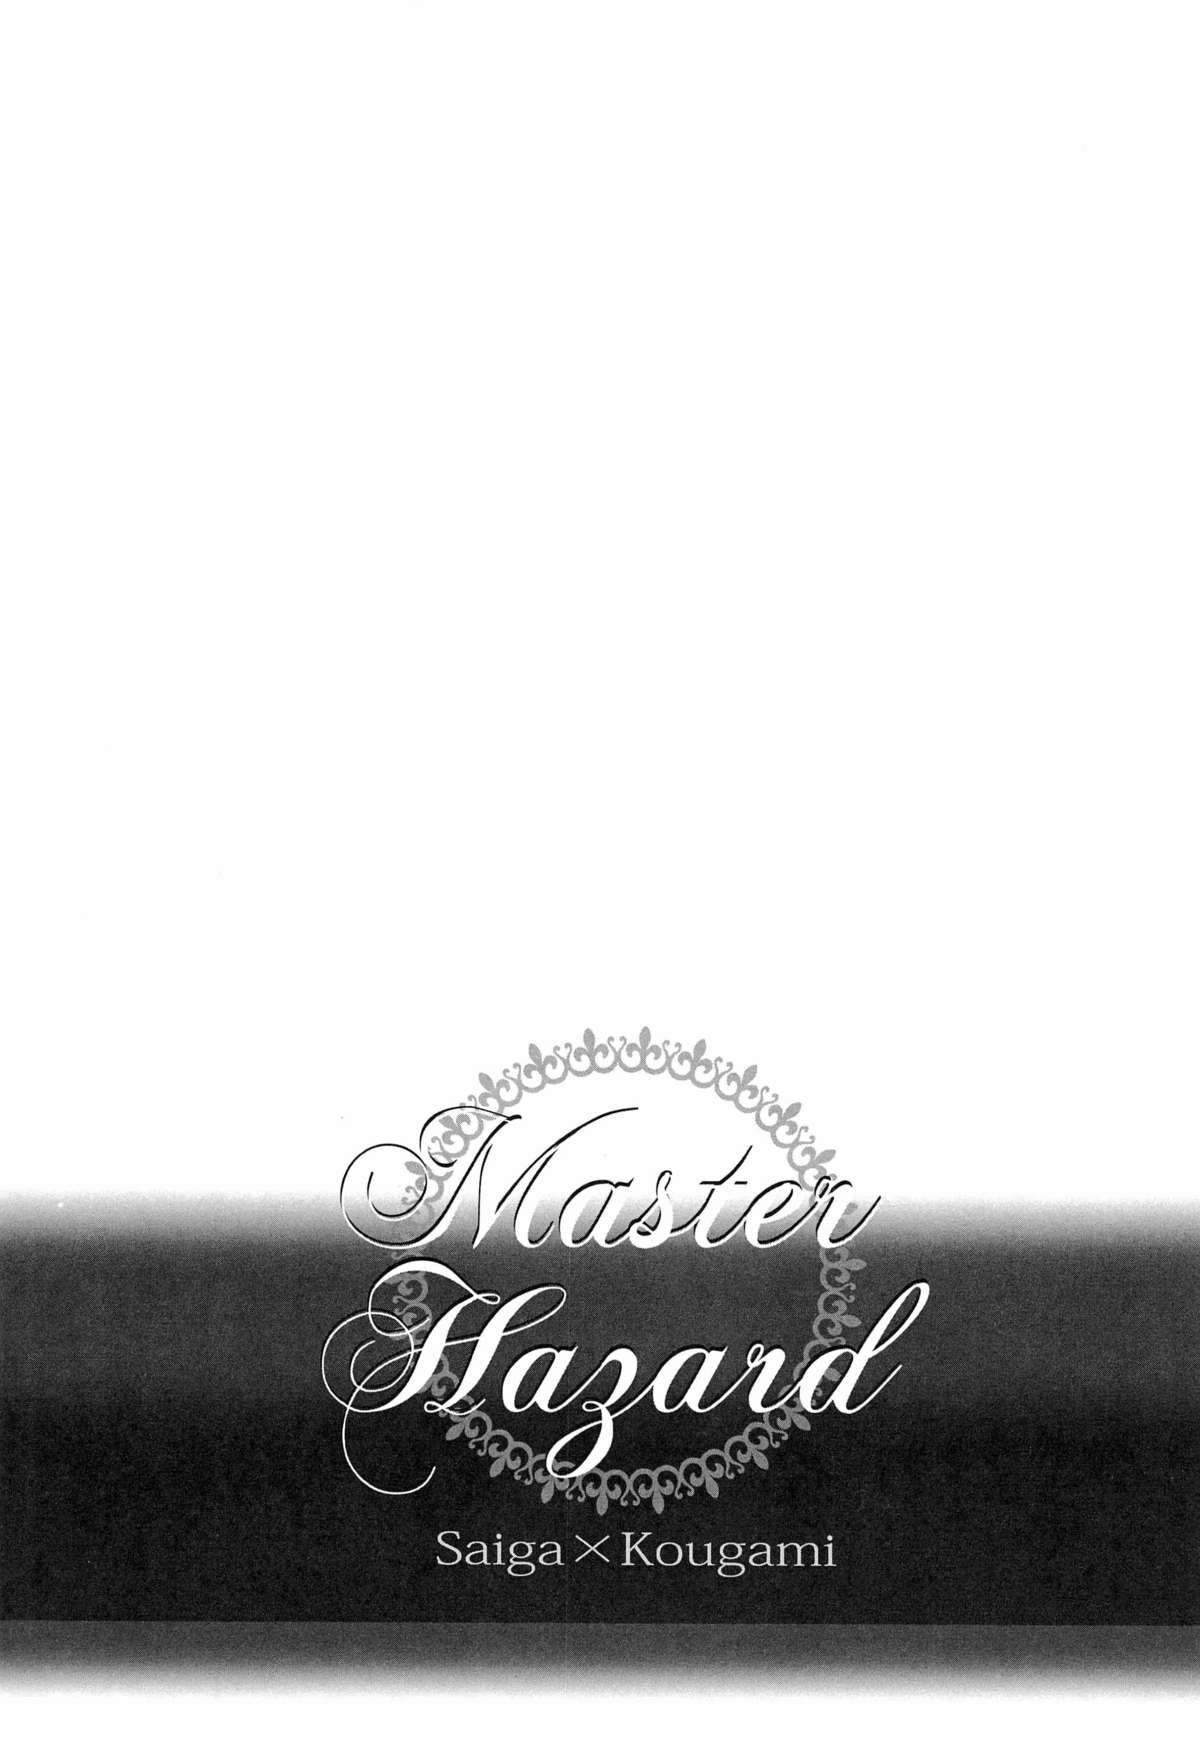 [FINDER, miou miou (Mukai Yuuya, Nana)] Master Hazard (Psycho-Pass) page 3 full